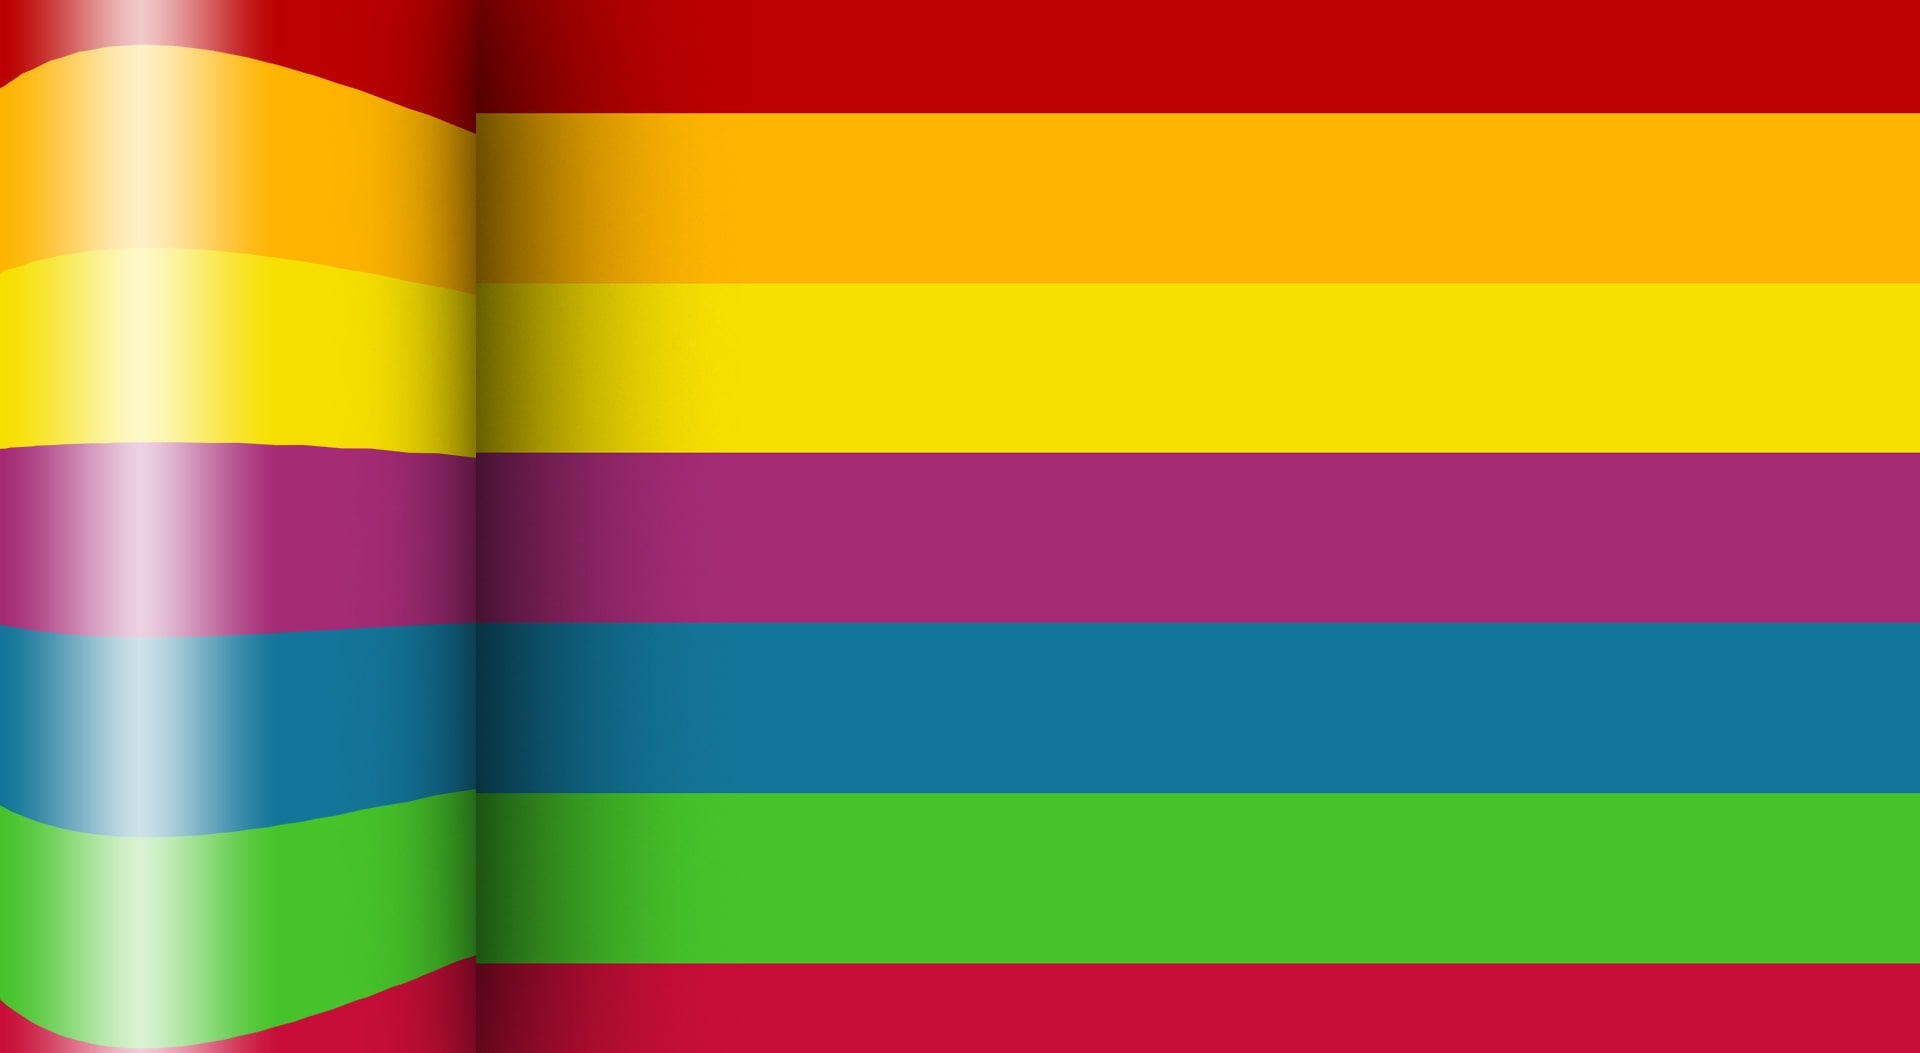 Colour Stripes_Nithinsuren, multicolored striped wallpaper, Aero